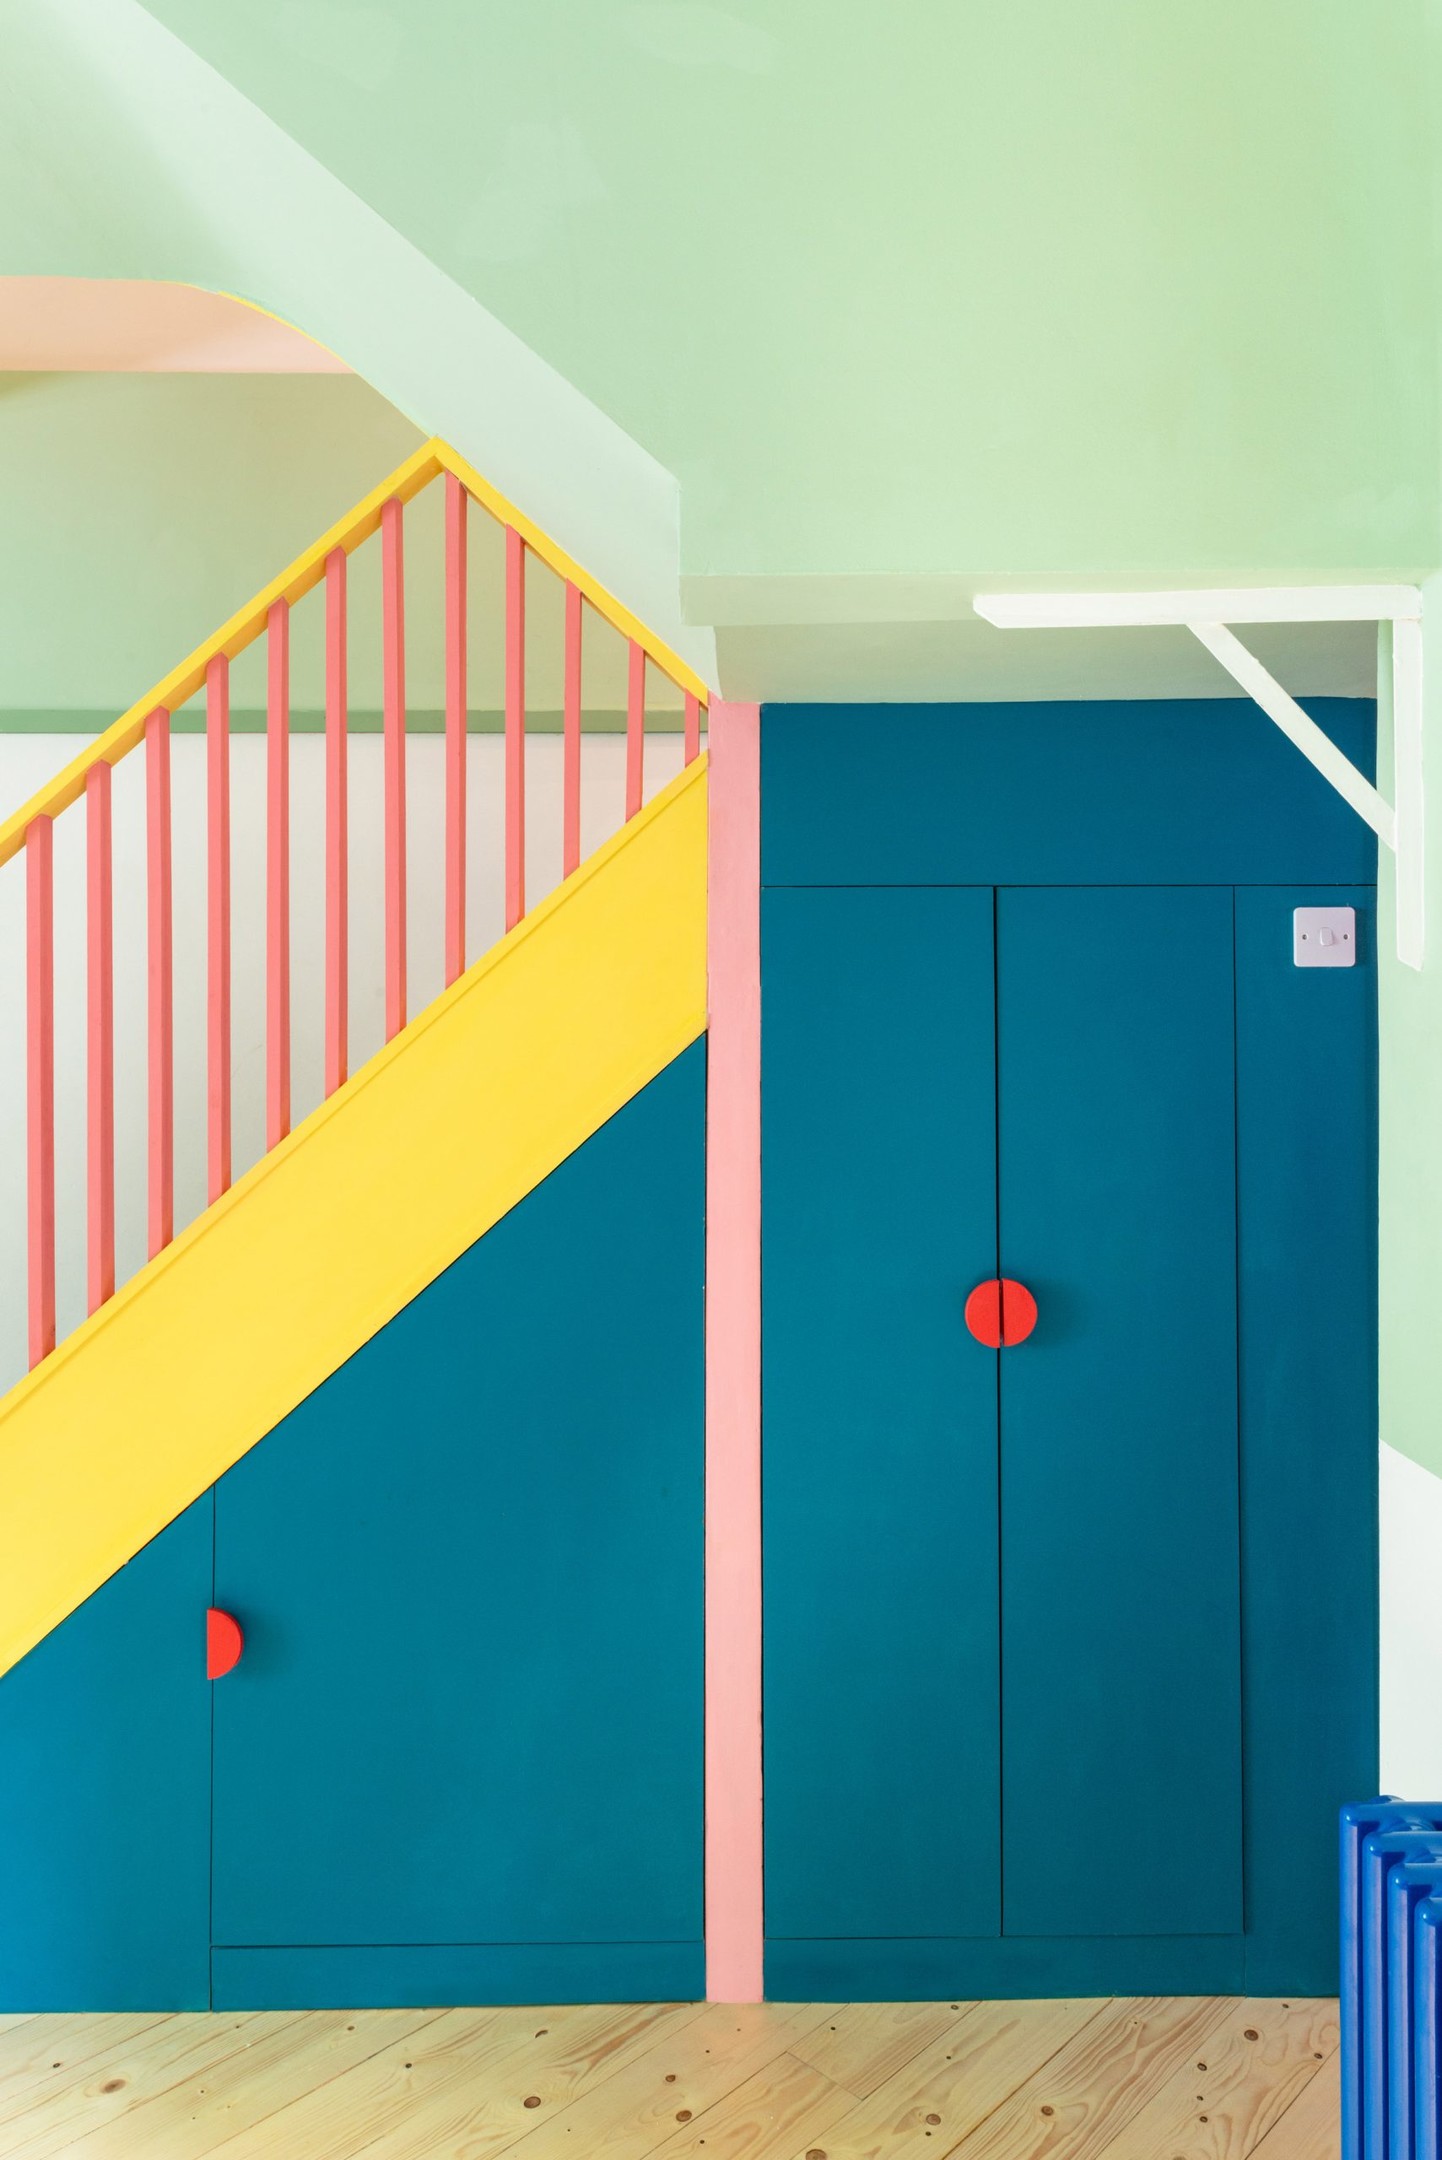 Khu vực cầu thang dẫn lối lên tầng 2 ngôi nhà lựa chọn màu xanh lam đậm chủ đạo, từ các bậc tam cấp cho đến mặt bên. Đặc biệt, các nhà thiết kế đã tích hợp hệ thống tủ lưu trữ nhằm tối ưu hóa không gian với tay nắm cửa màu đỏ làm điểm nhấn.